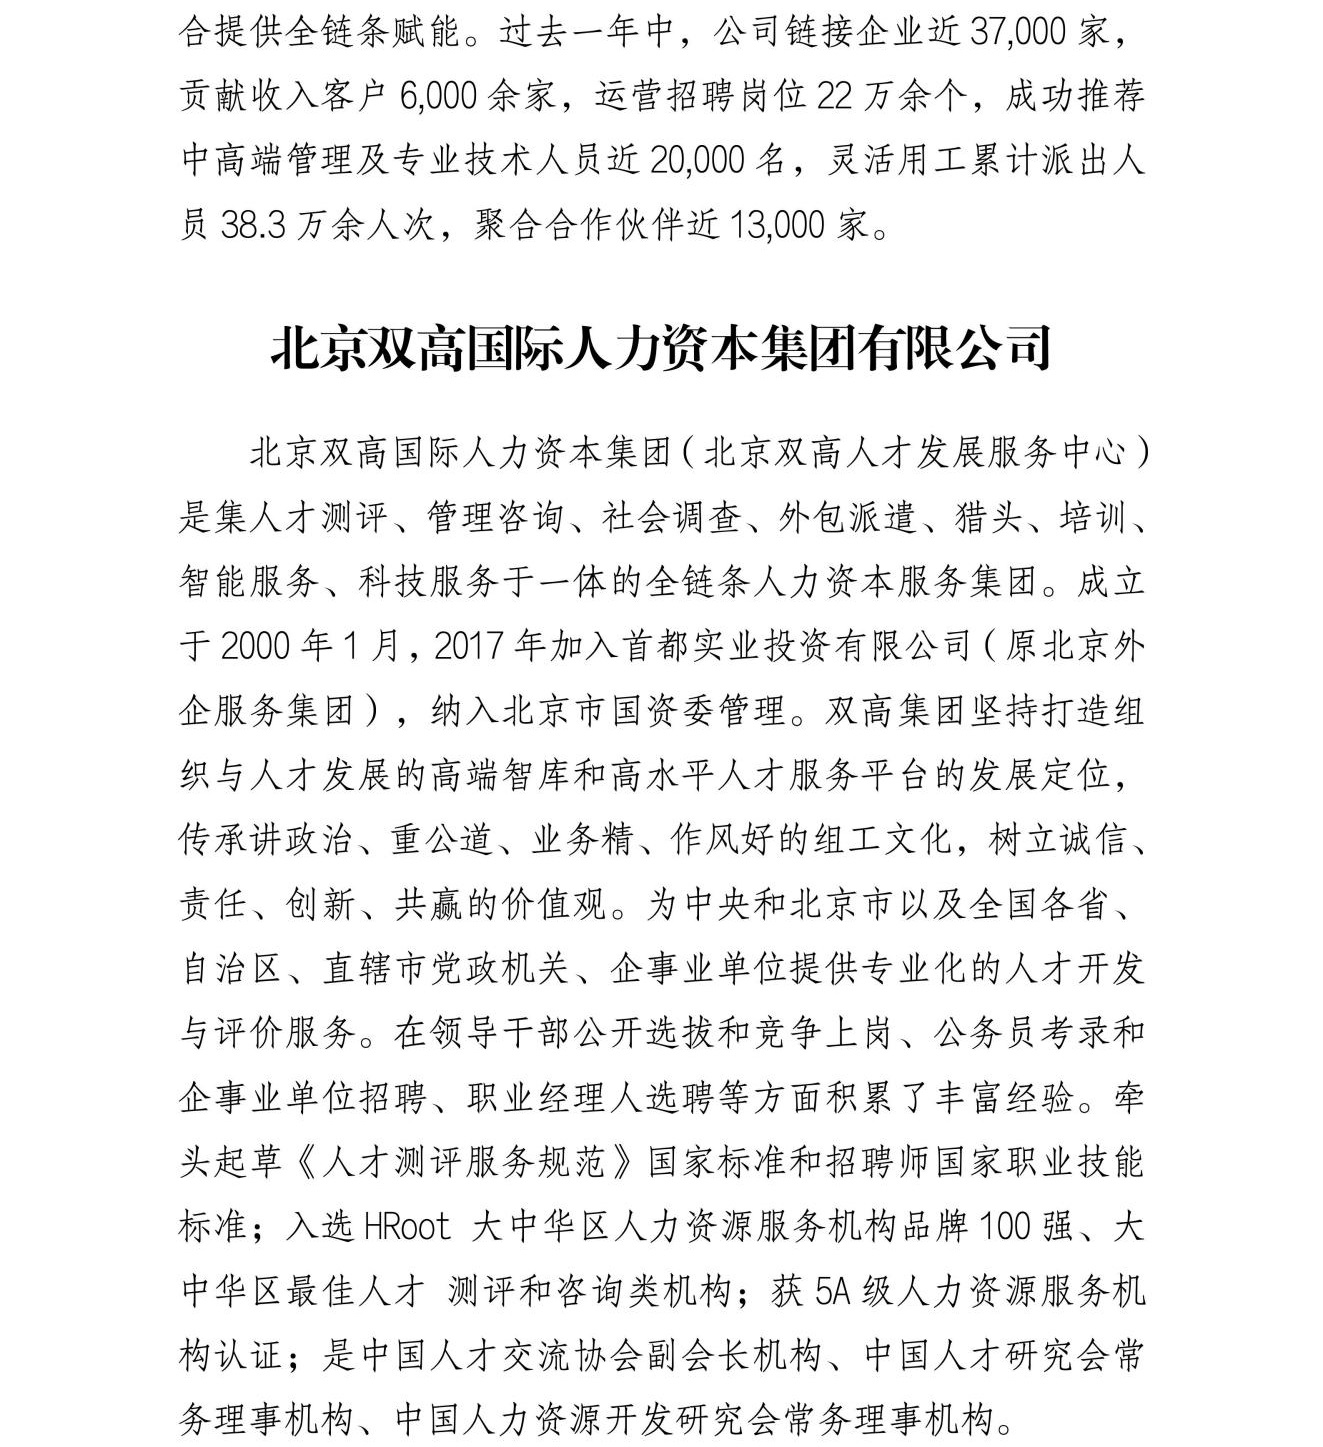 关于开展北京游学营的通知_05.jpg